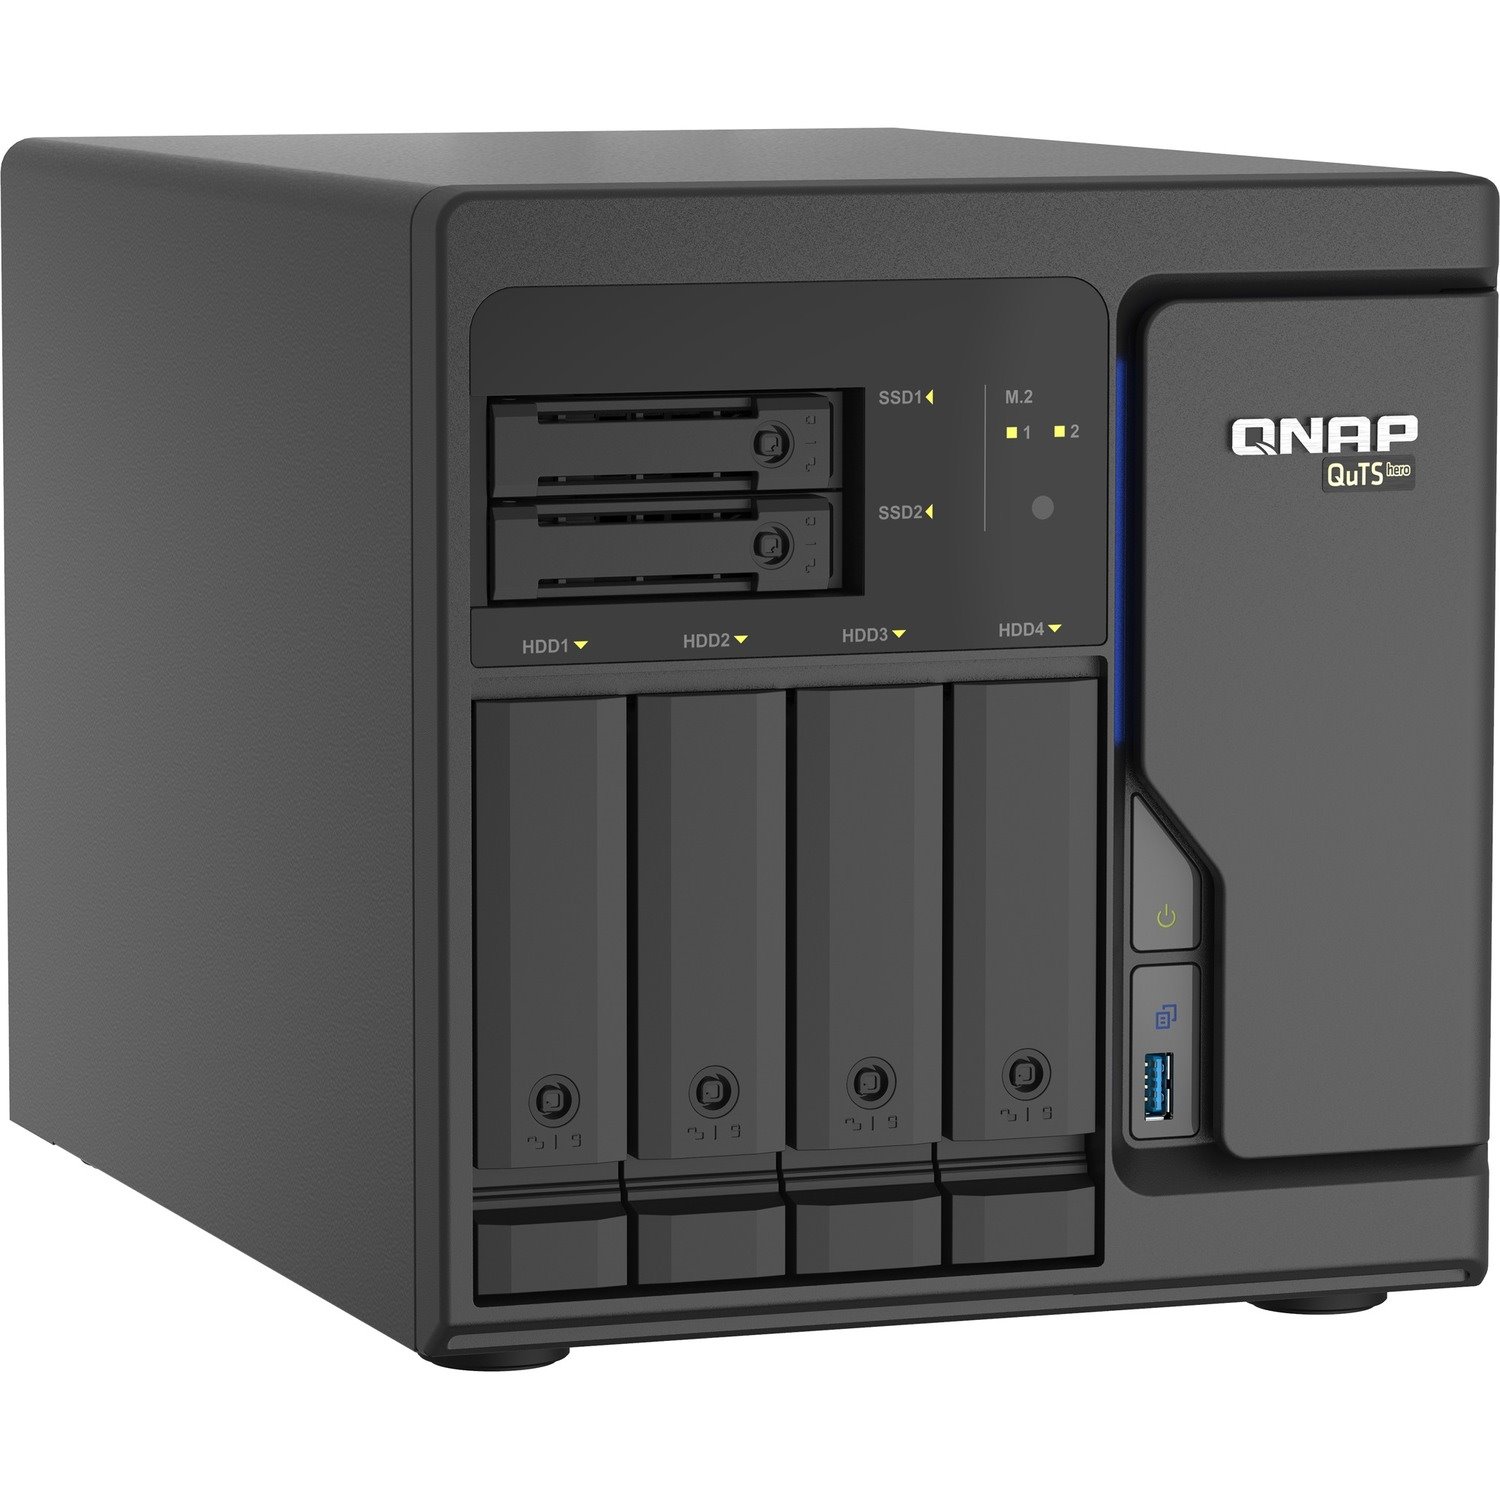 QNAP Cost-effective Intel Xeon D desktop QuTS Hero NAS with Quad-port 2.5GbE